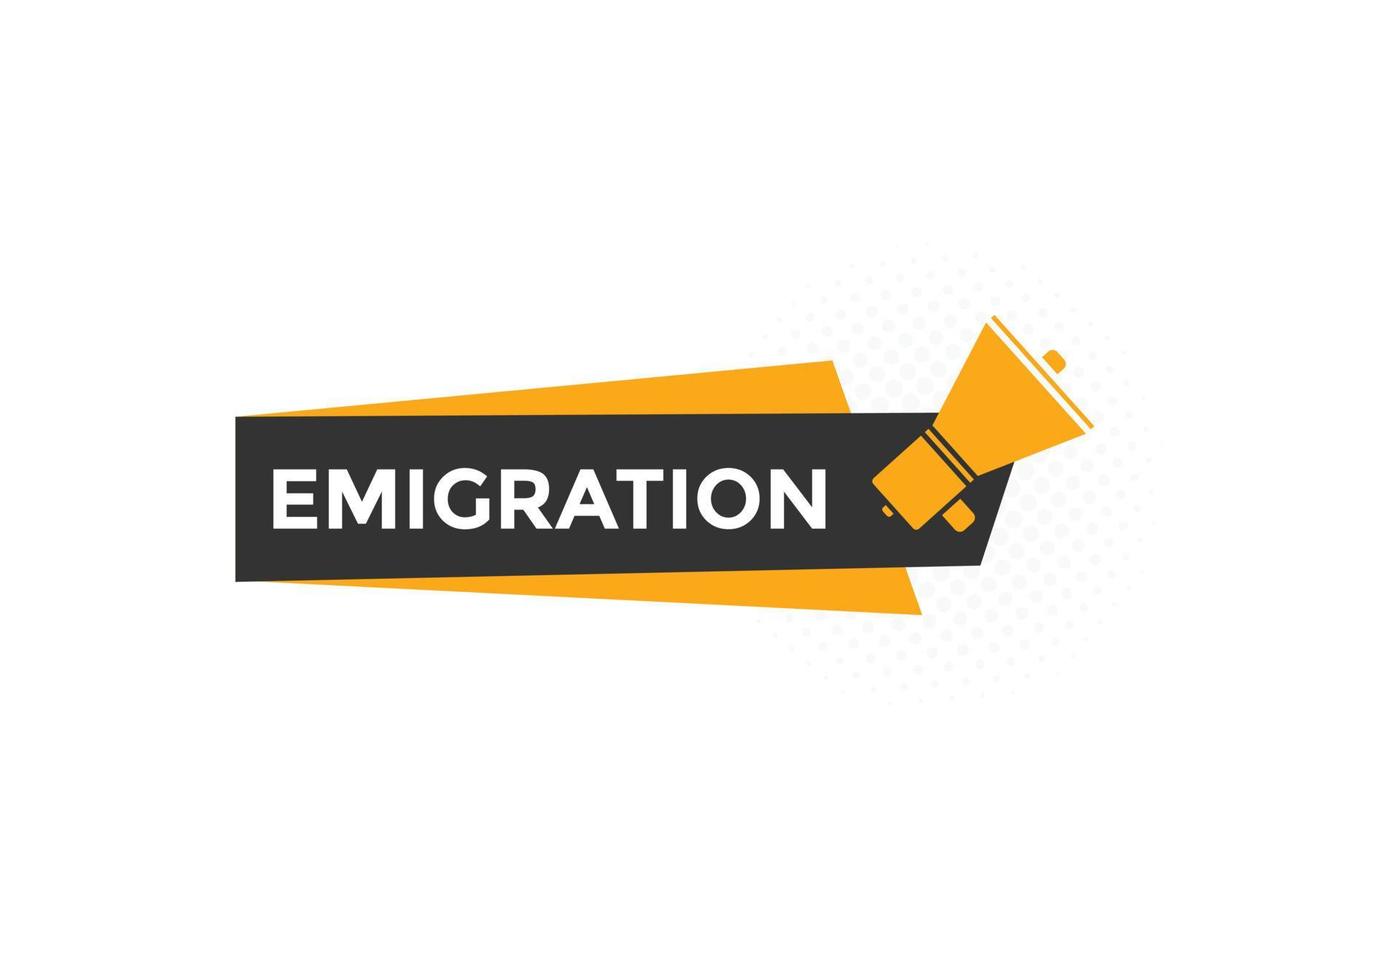 Emigration button. speech bubble. Emigration Colorful web banner. vector illustration